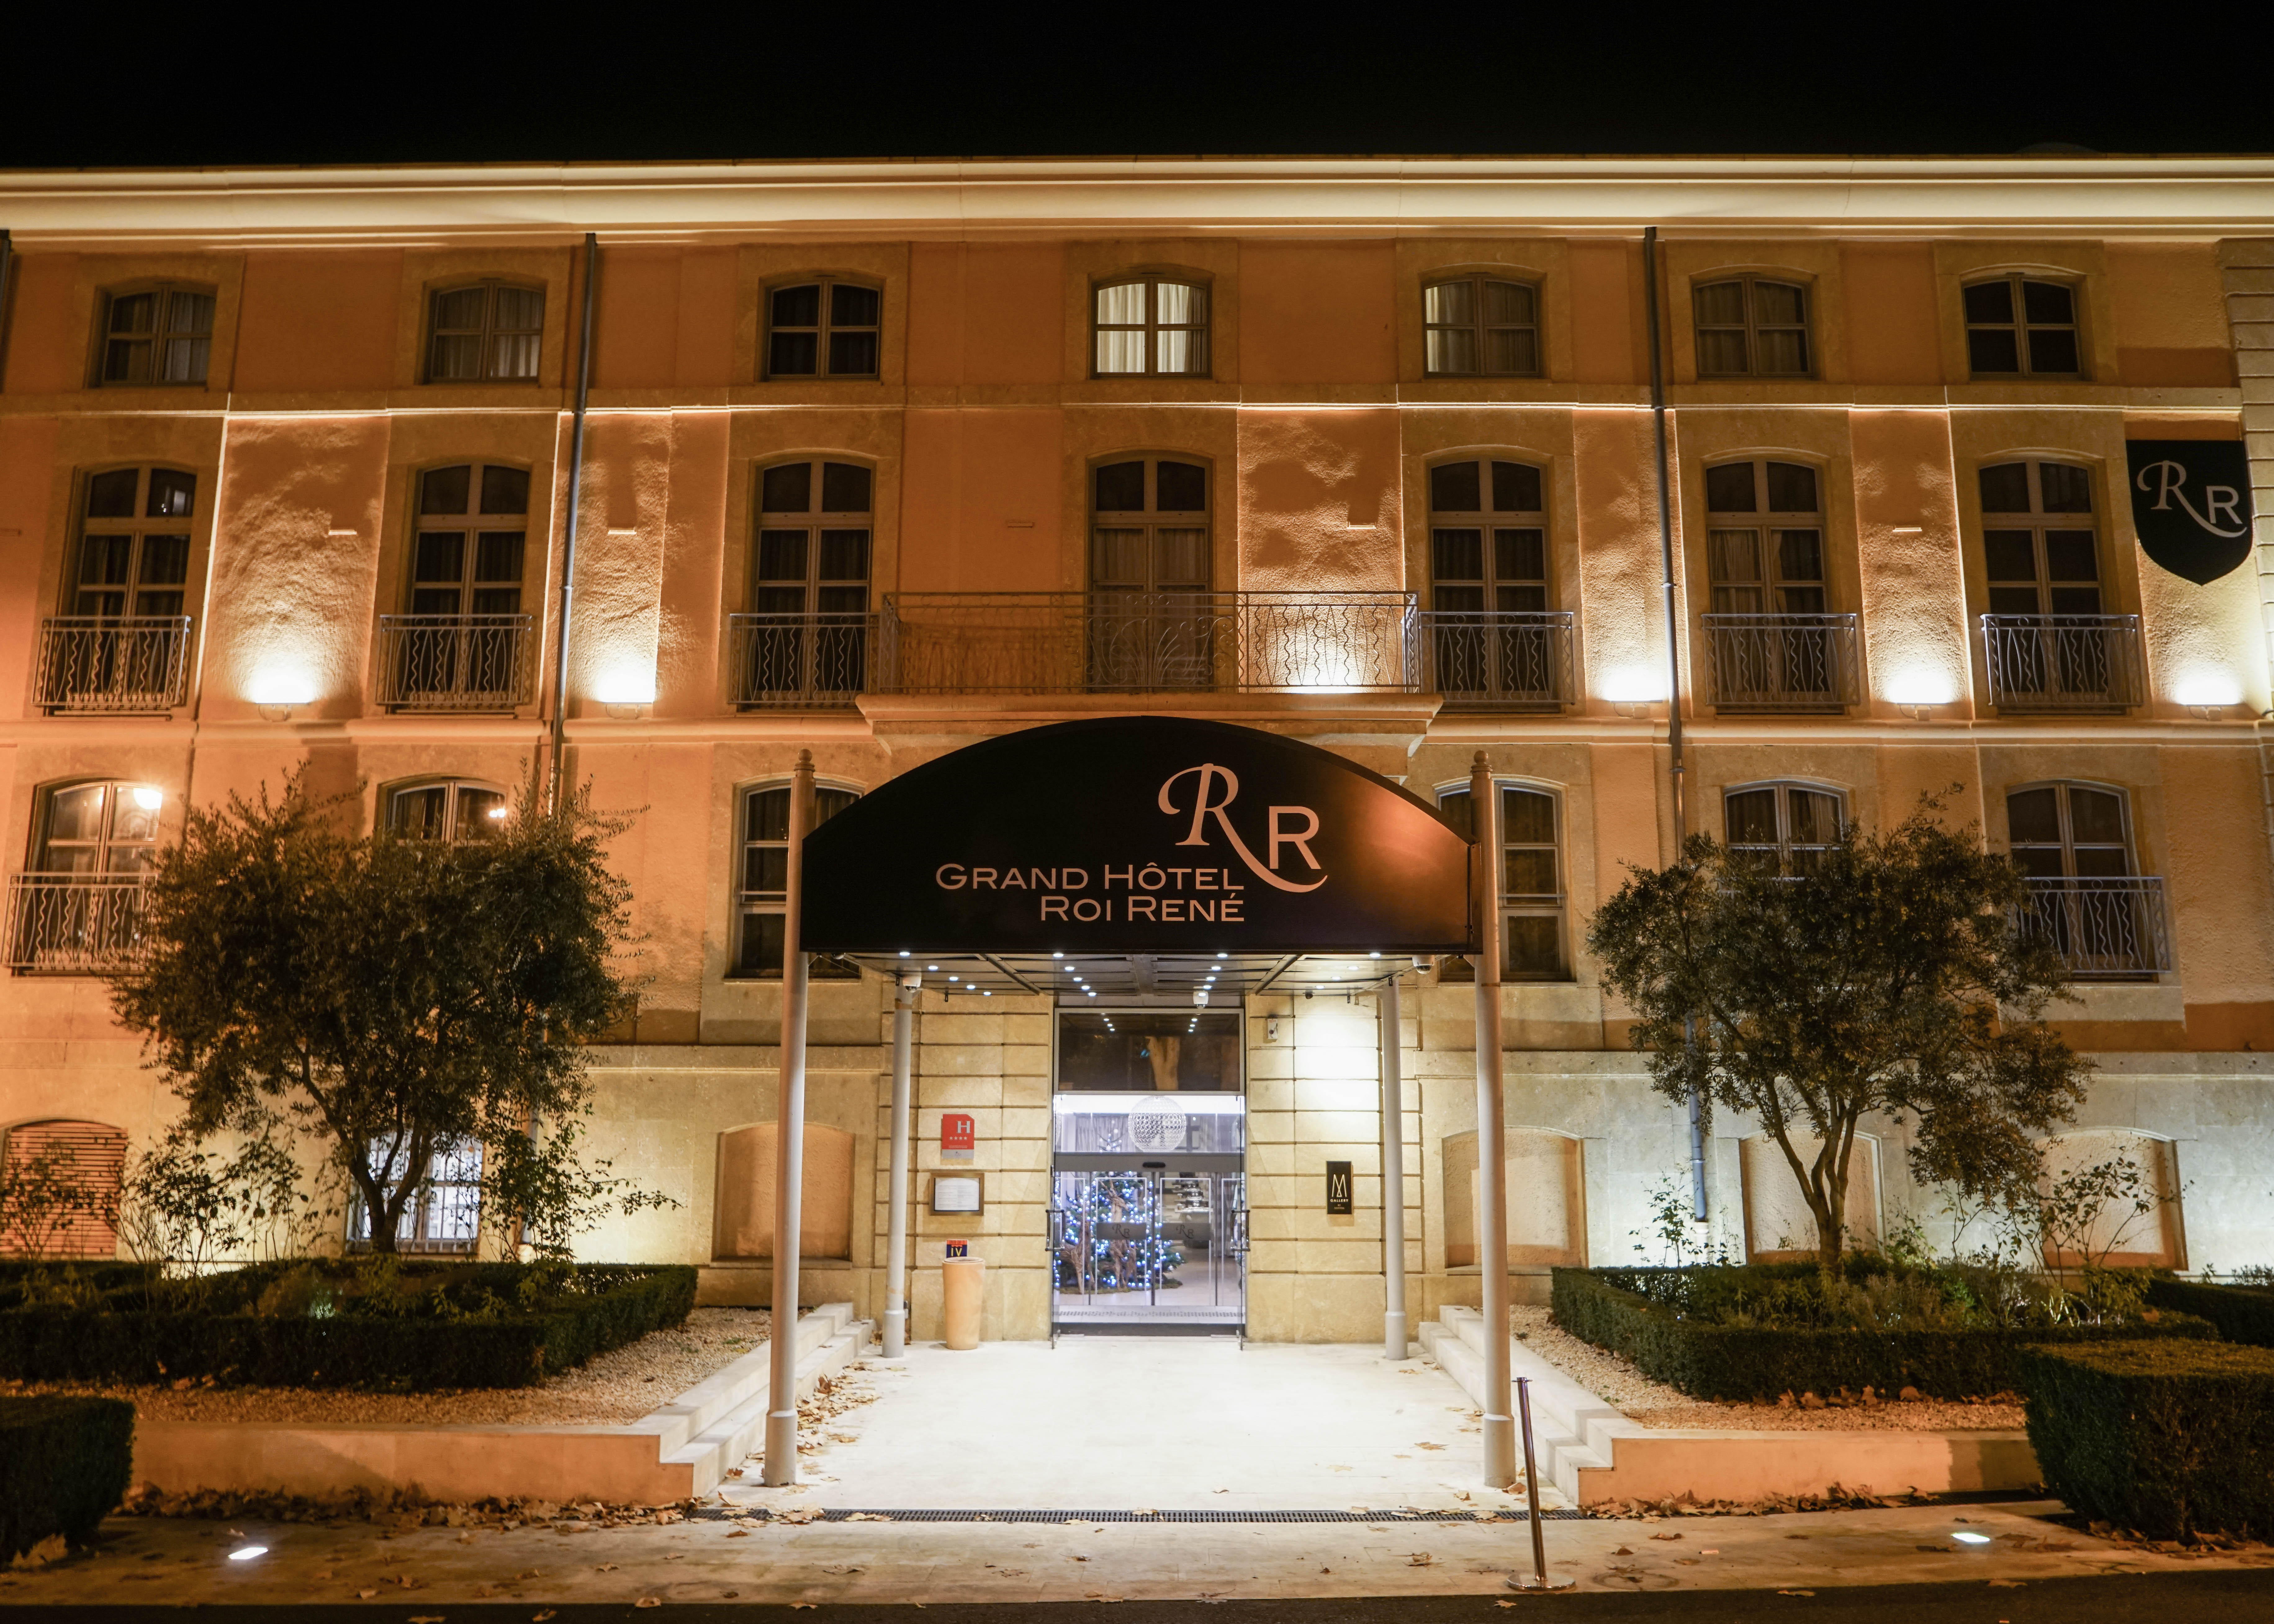 Grand Hotel Roi René 艾克斯 普罗旺斯 